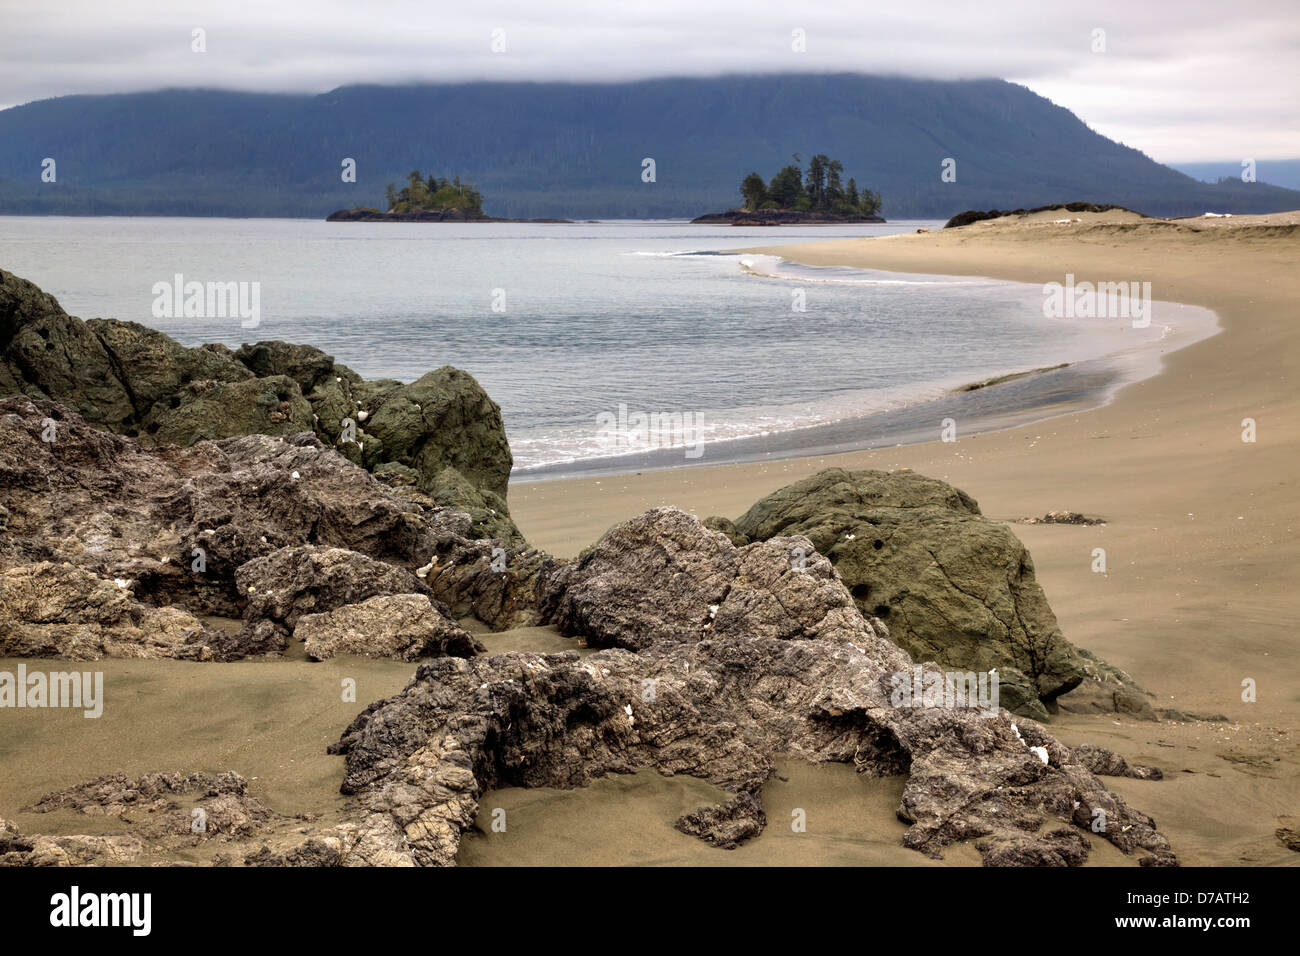 Walfänger Inselchen mit Blick auf die Insel Flores; Vancouver Island in British Columbia Kanada Stockfoto